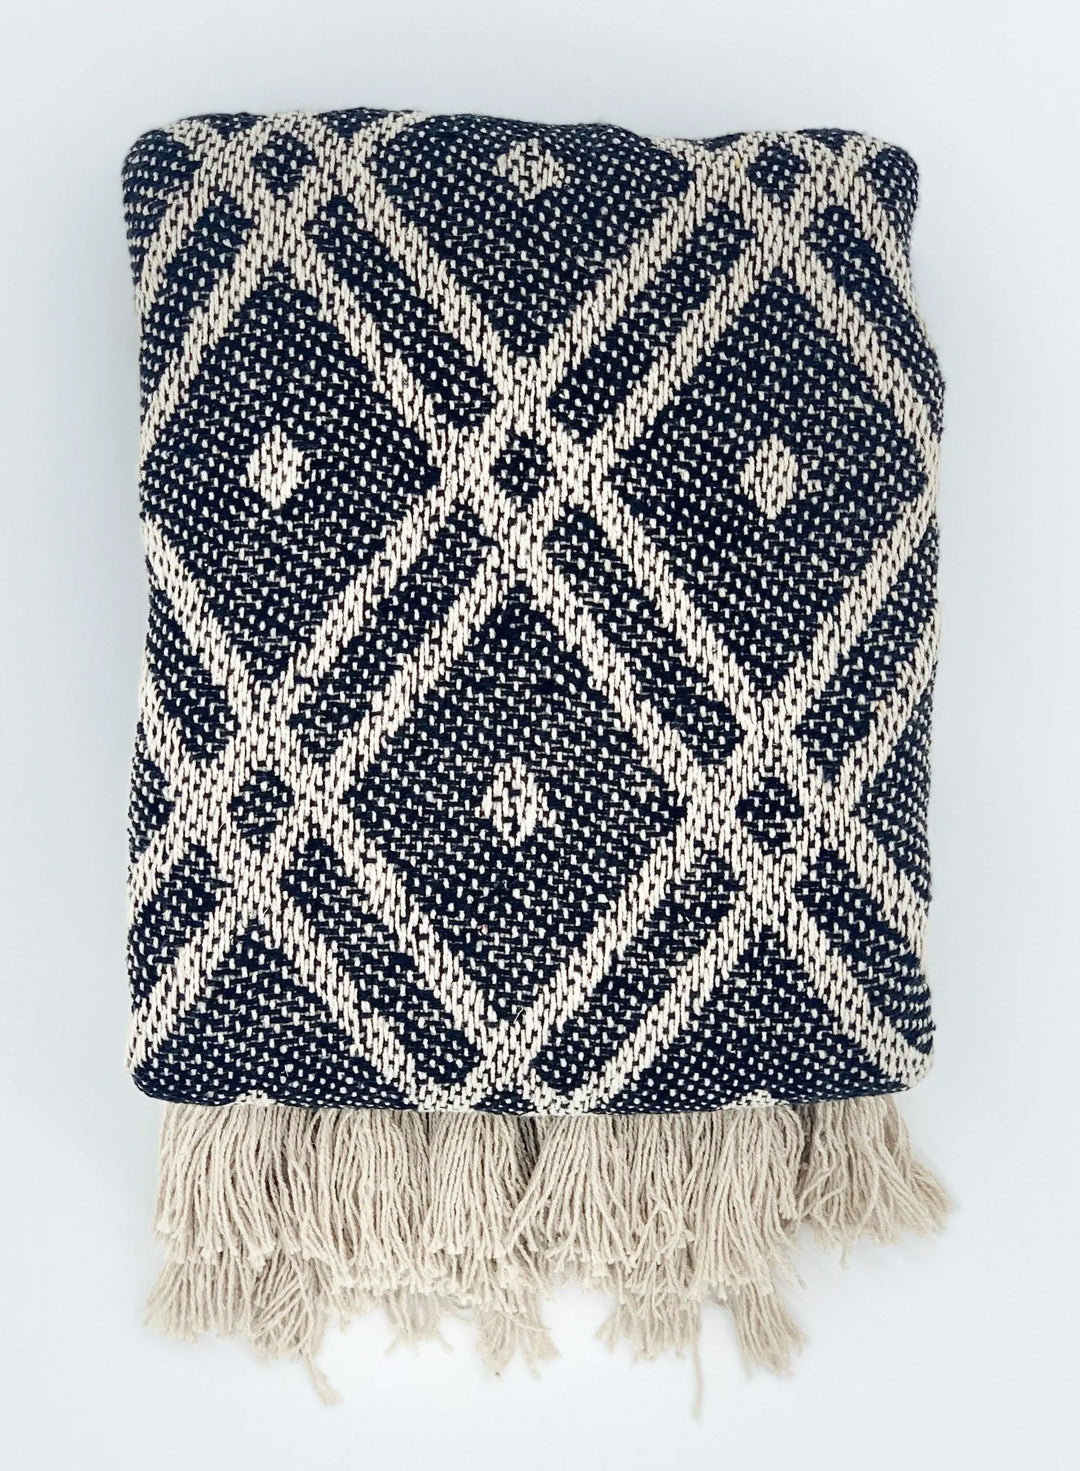 Decke aus Baumwolle Boho Style Schwarz Weiß gefaltet